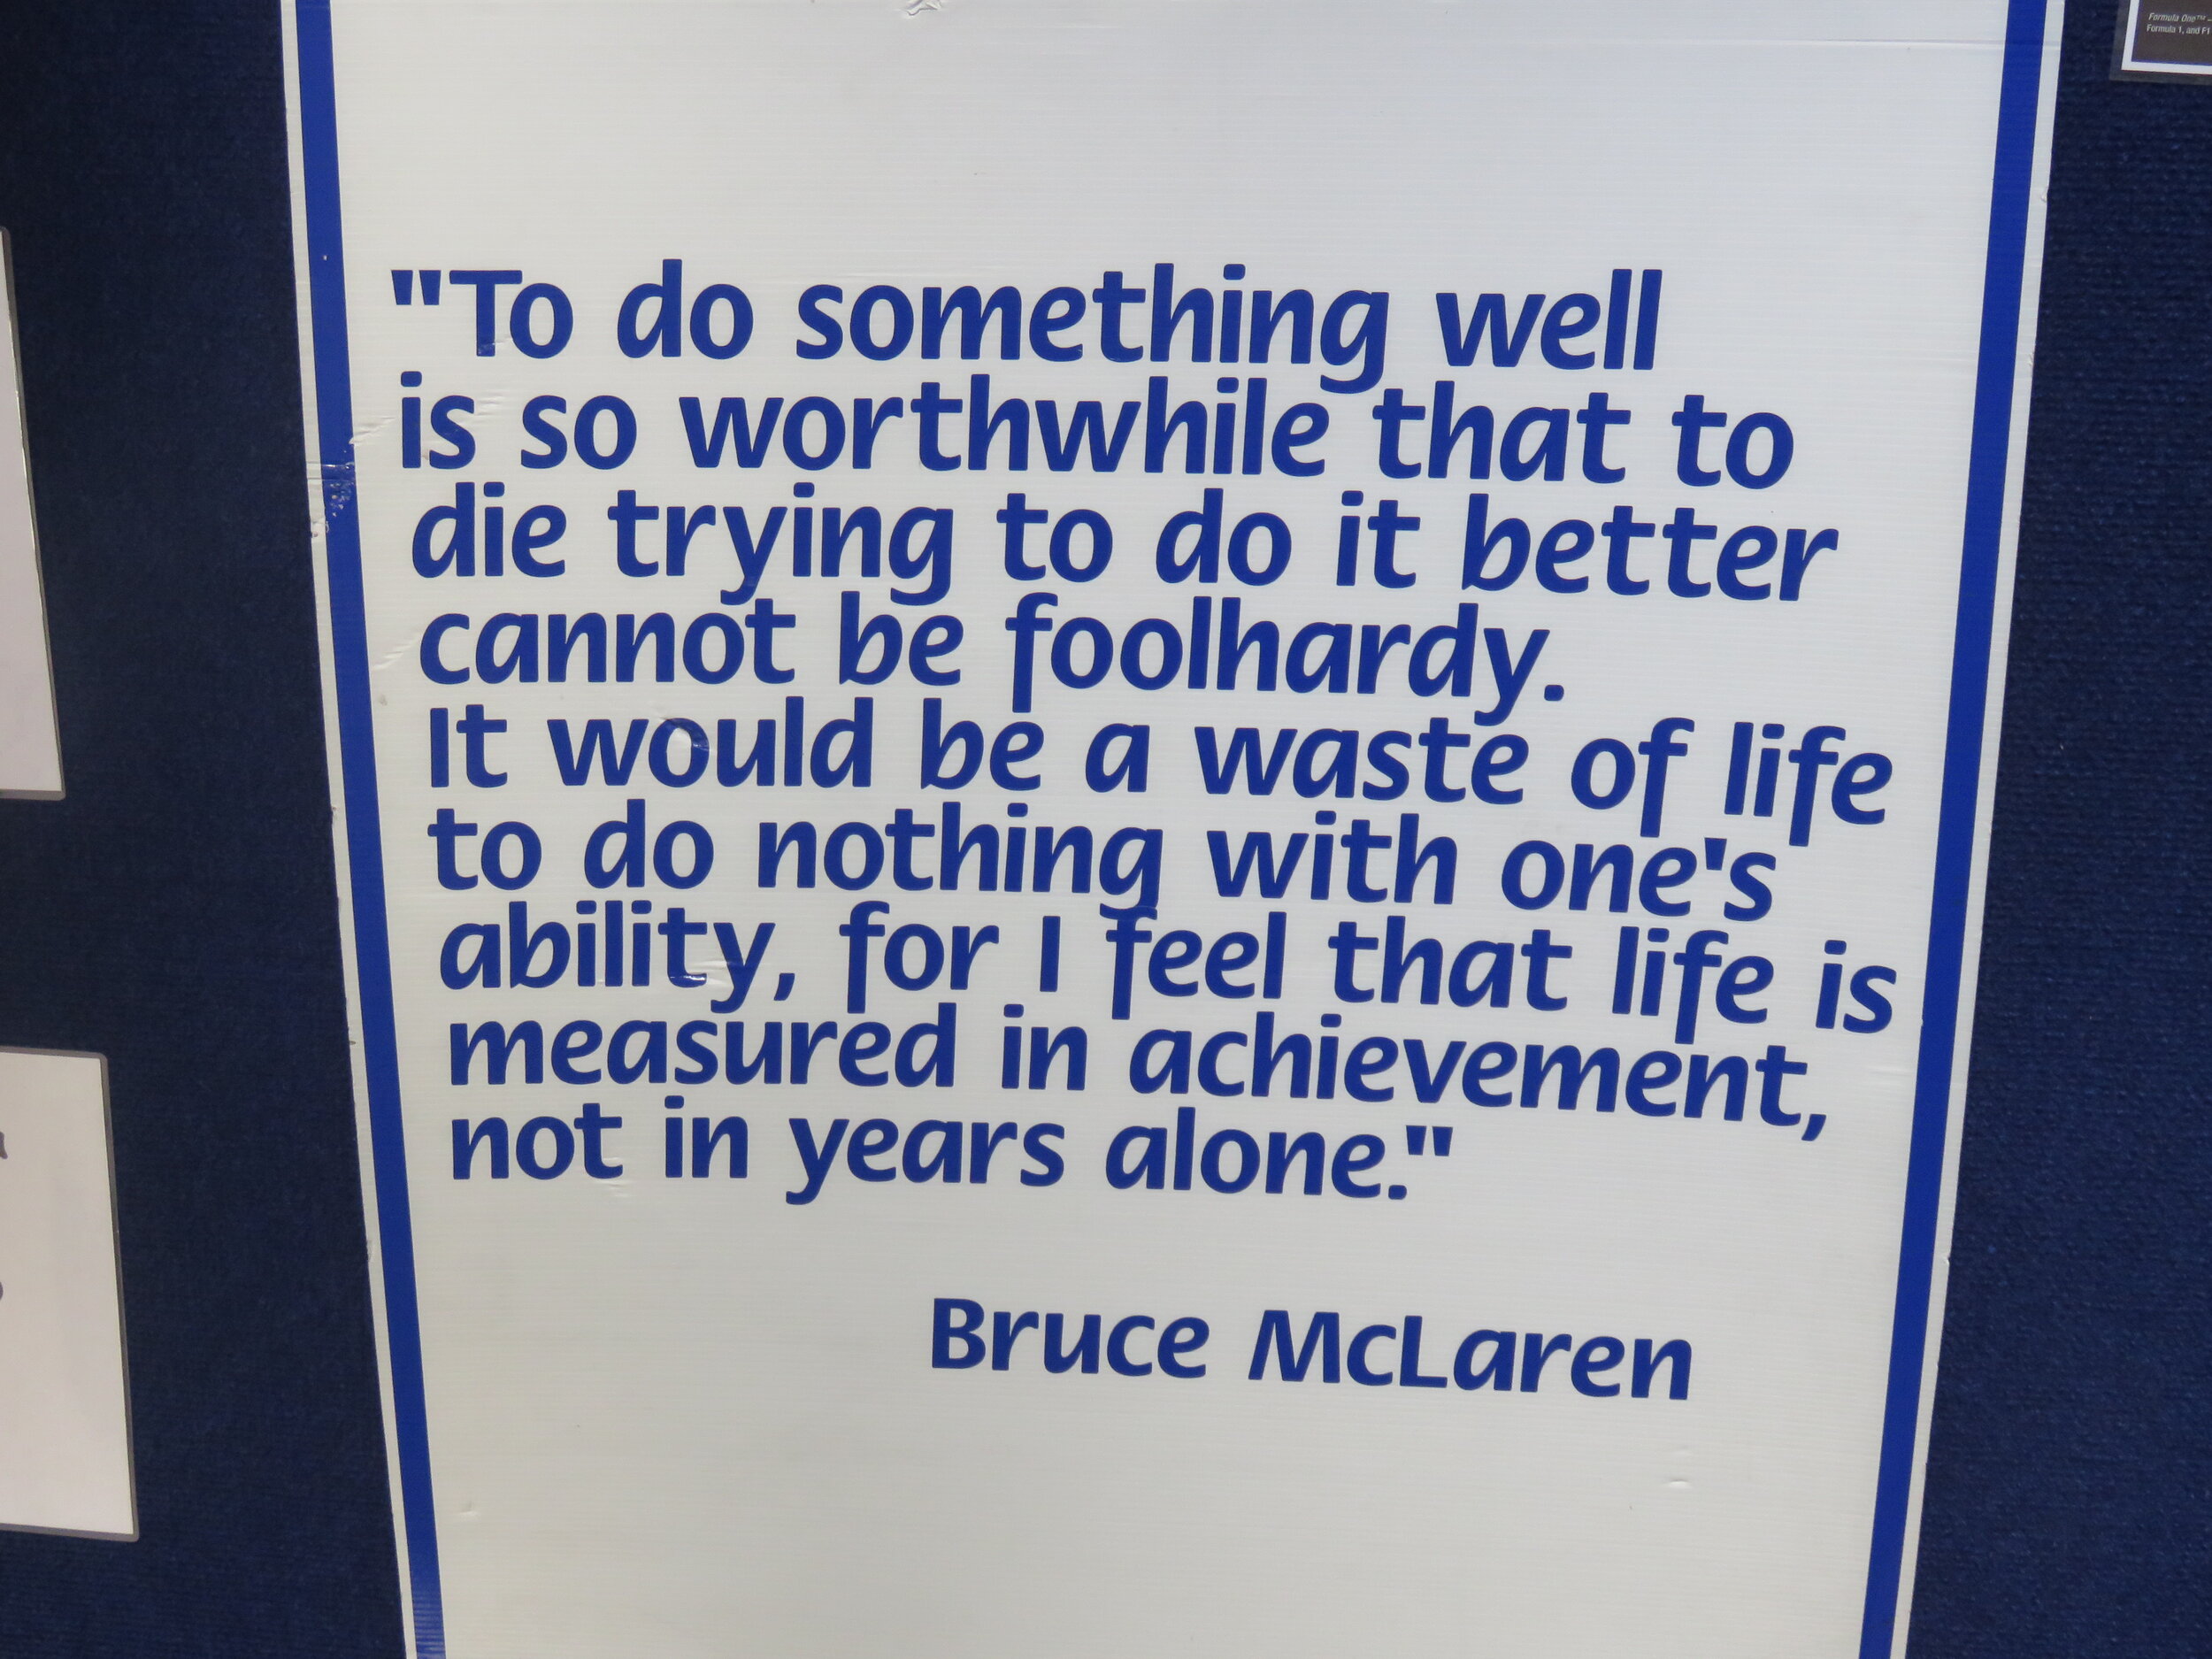 Bruce McLaren quote